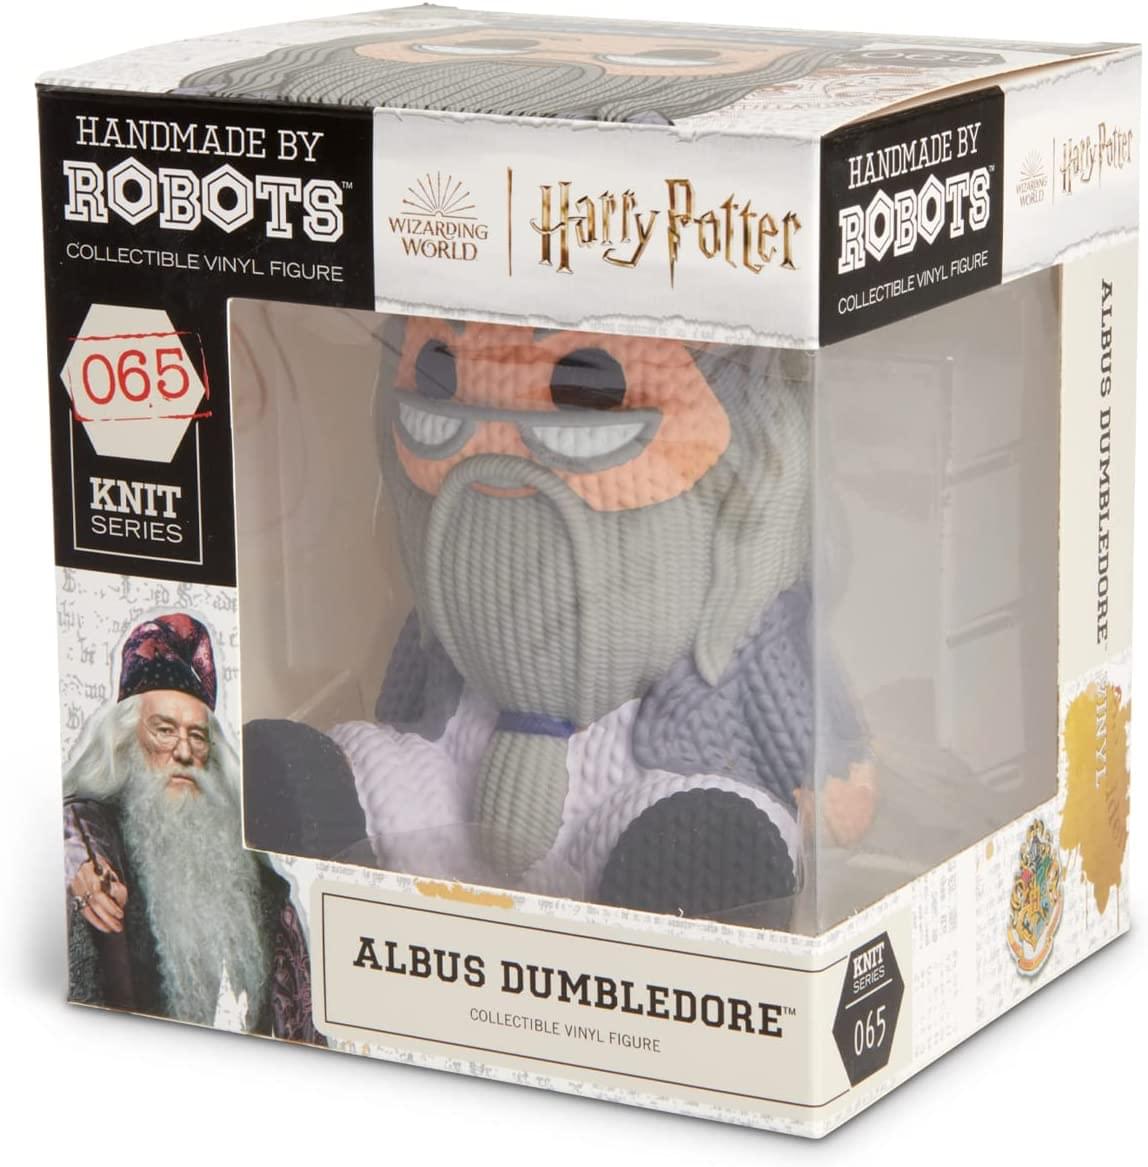 Harry Potter Handmade by Robots Vinyl Figure | Prof. Dumbledore